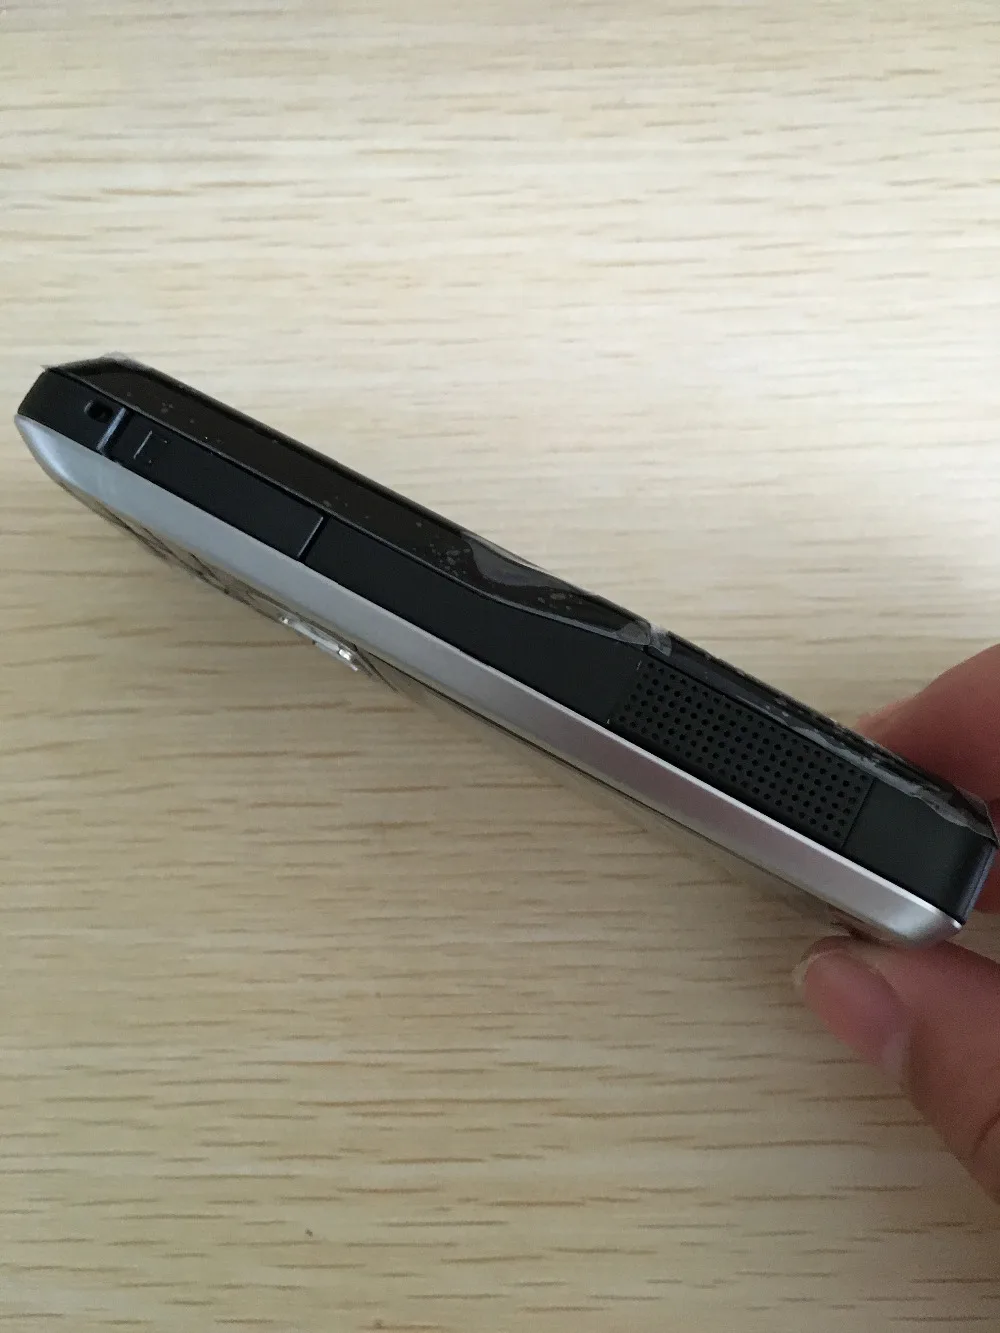 Nokia 6120 классический мобильный телефон разблокированный 6120c 3g смартфон и один год гарантии отремонтированный